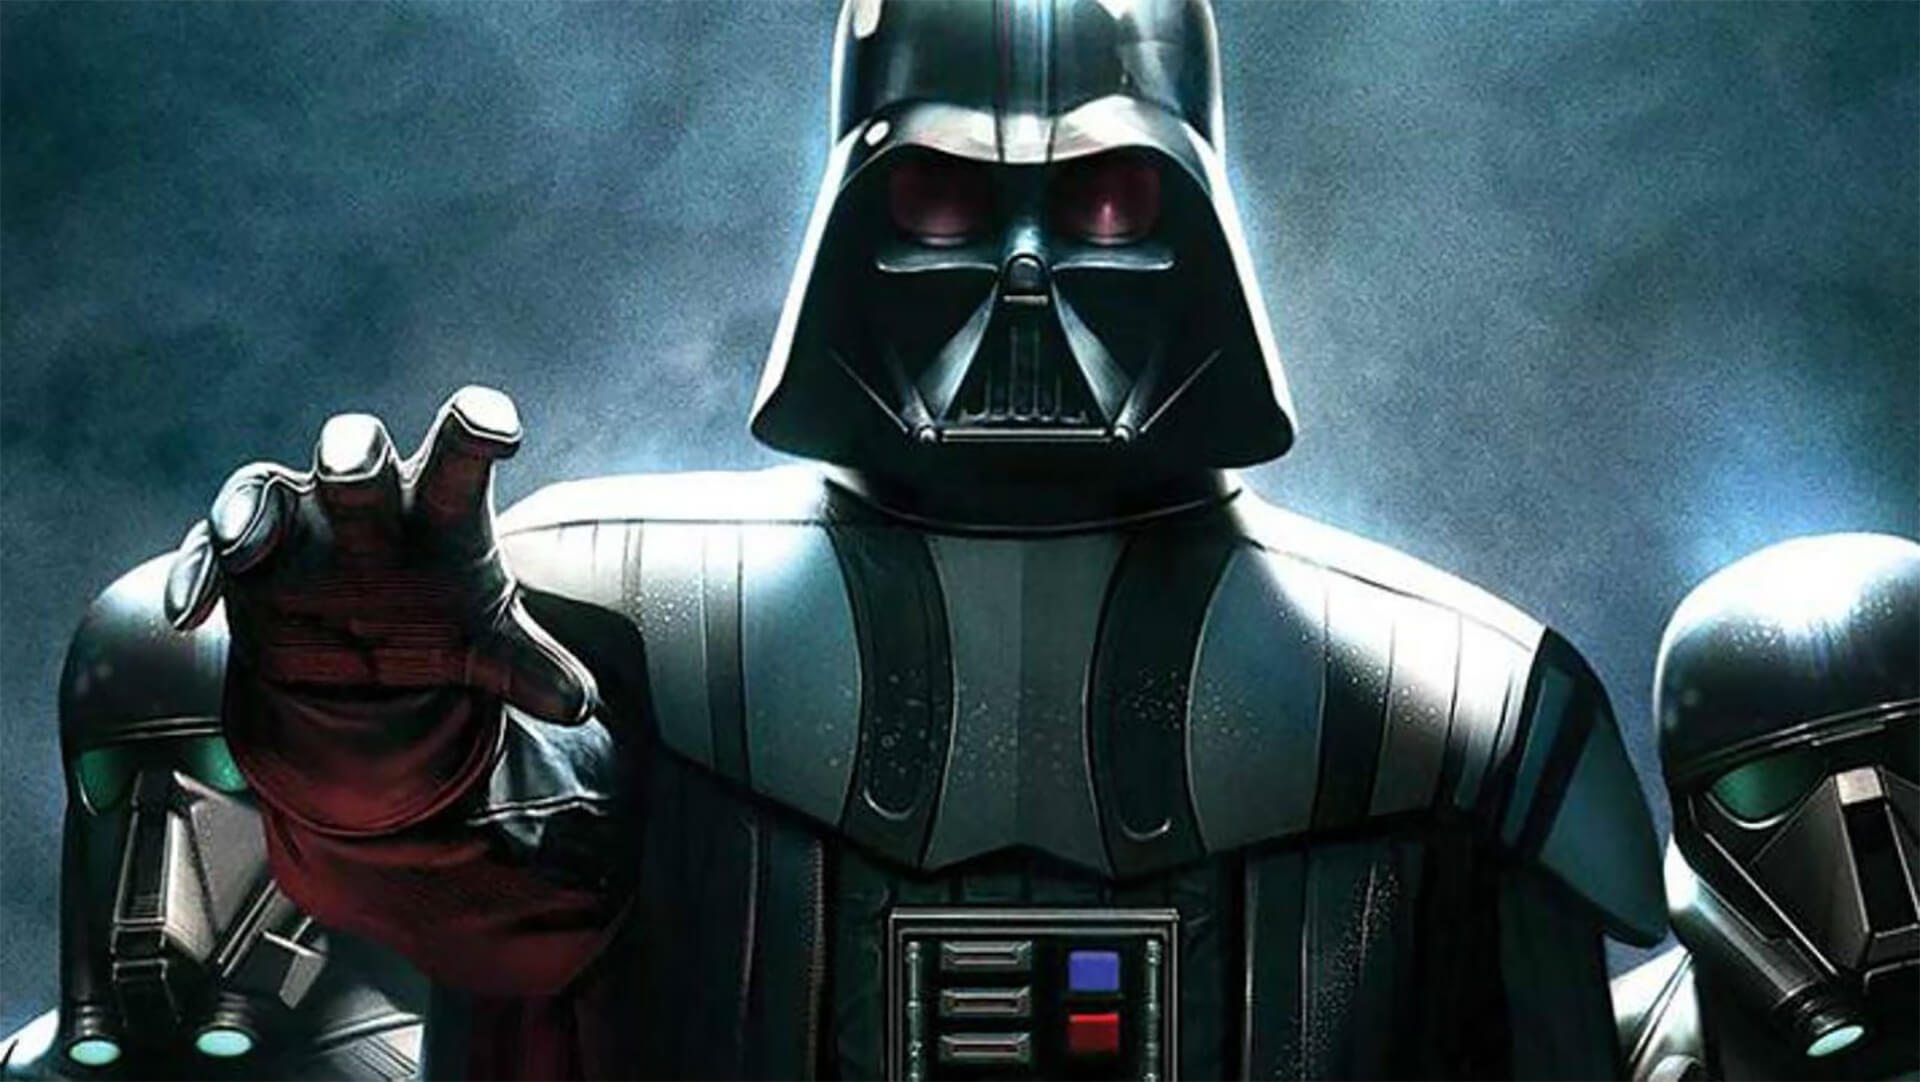 A Darth Vader képregény szerint a történet egyik kulcsszereplője mégsem halt meg